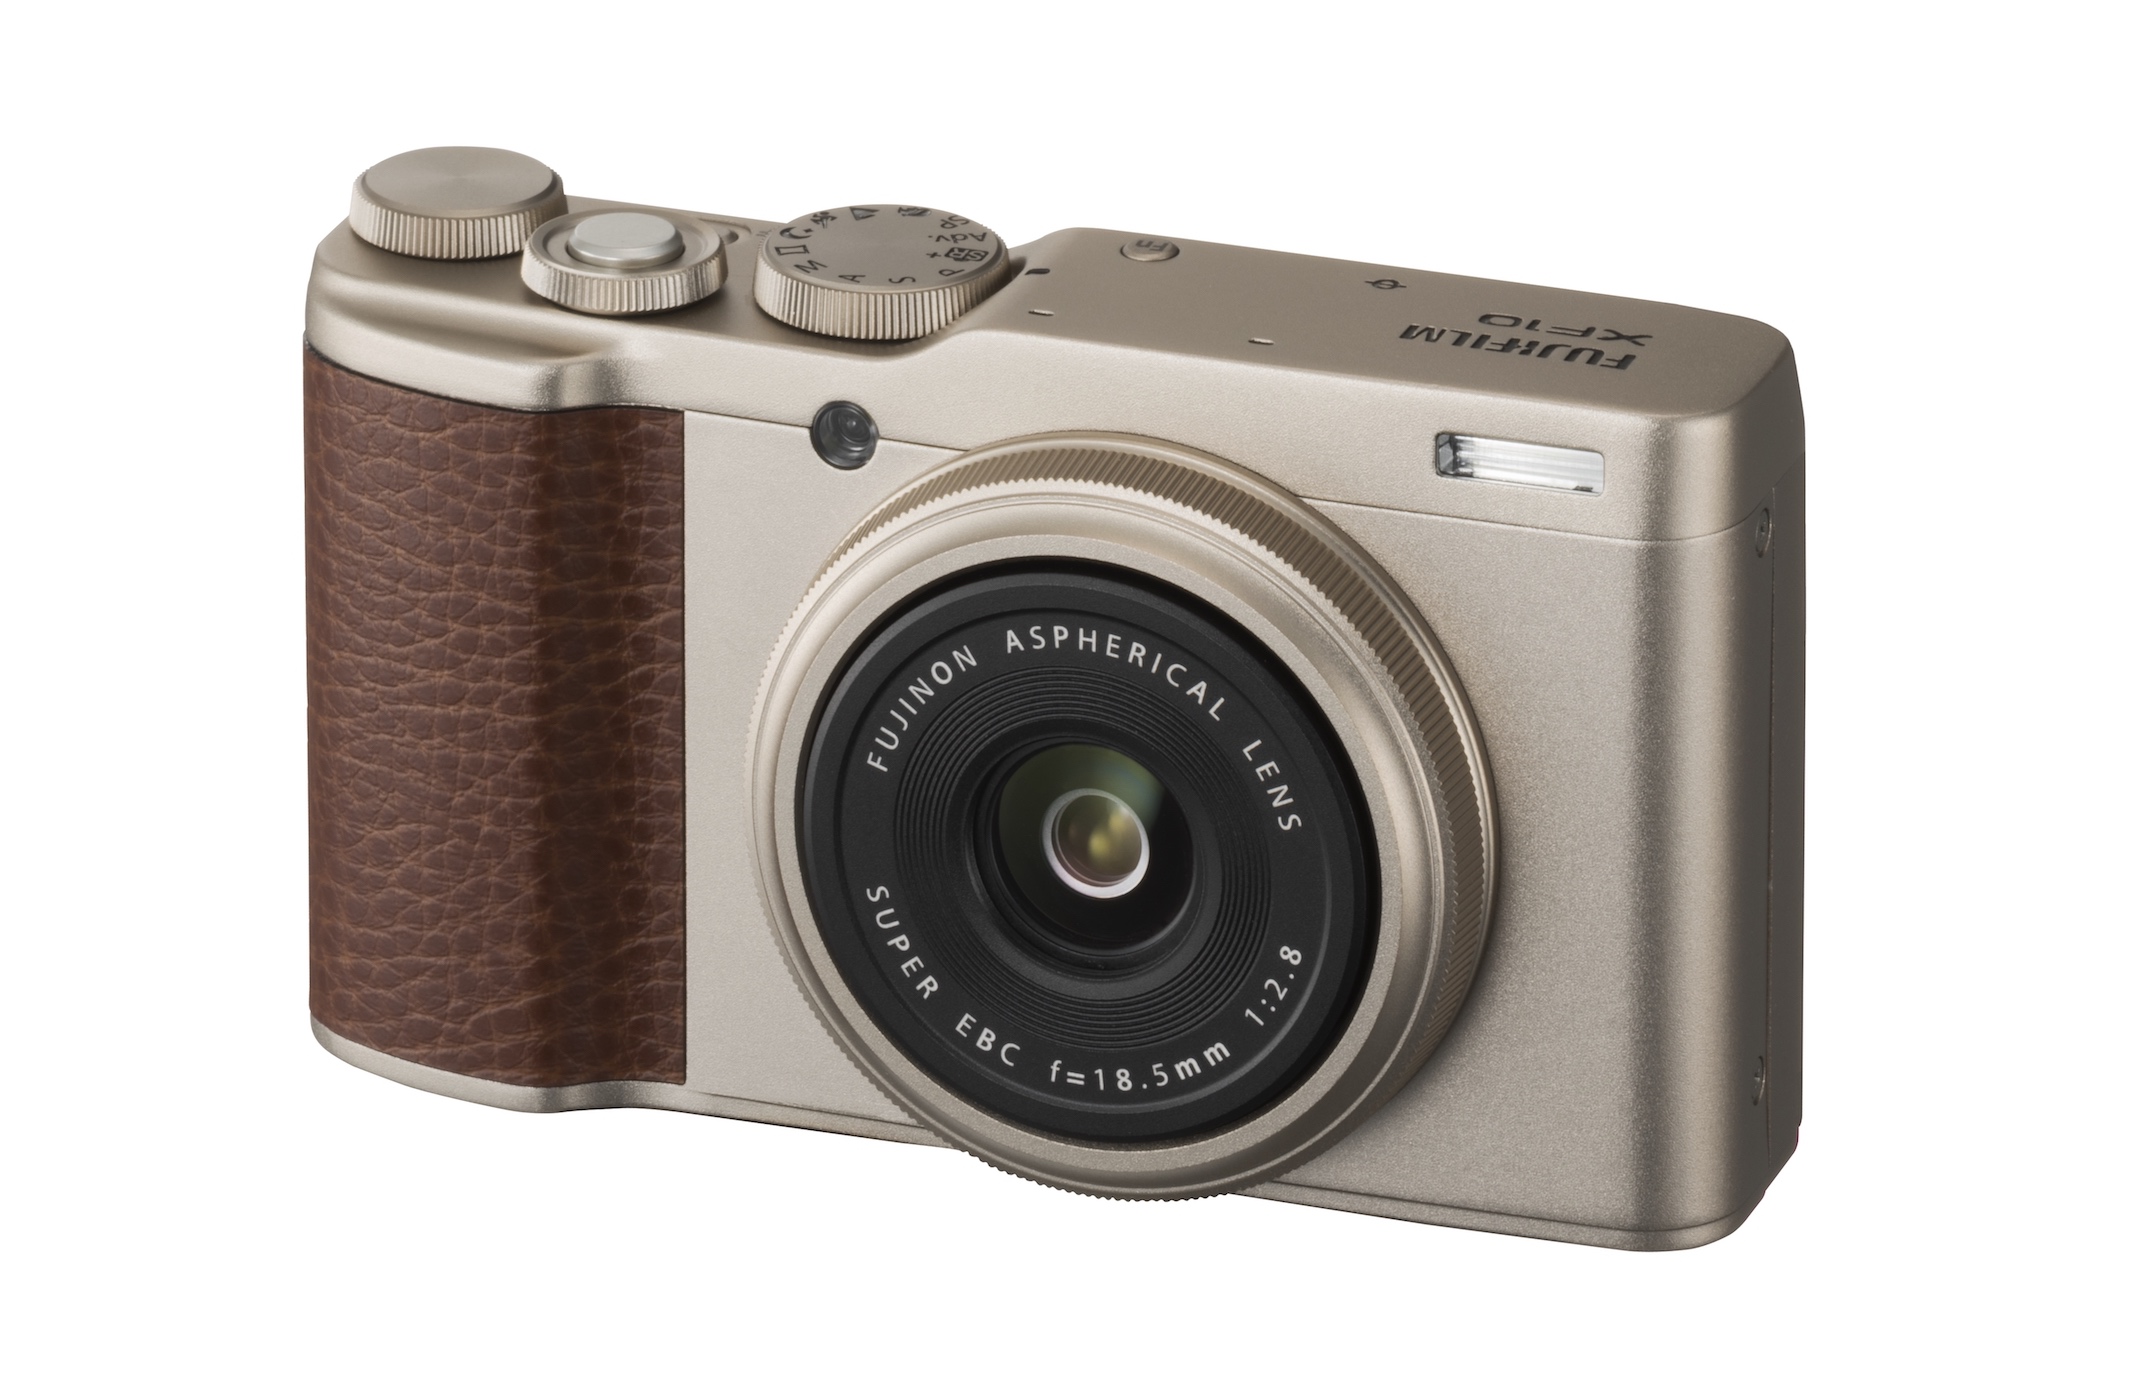 Fujifilm ra mắt XF10 máy ảnh compact nhỏ gọn với cảm biến lớn